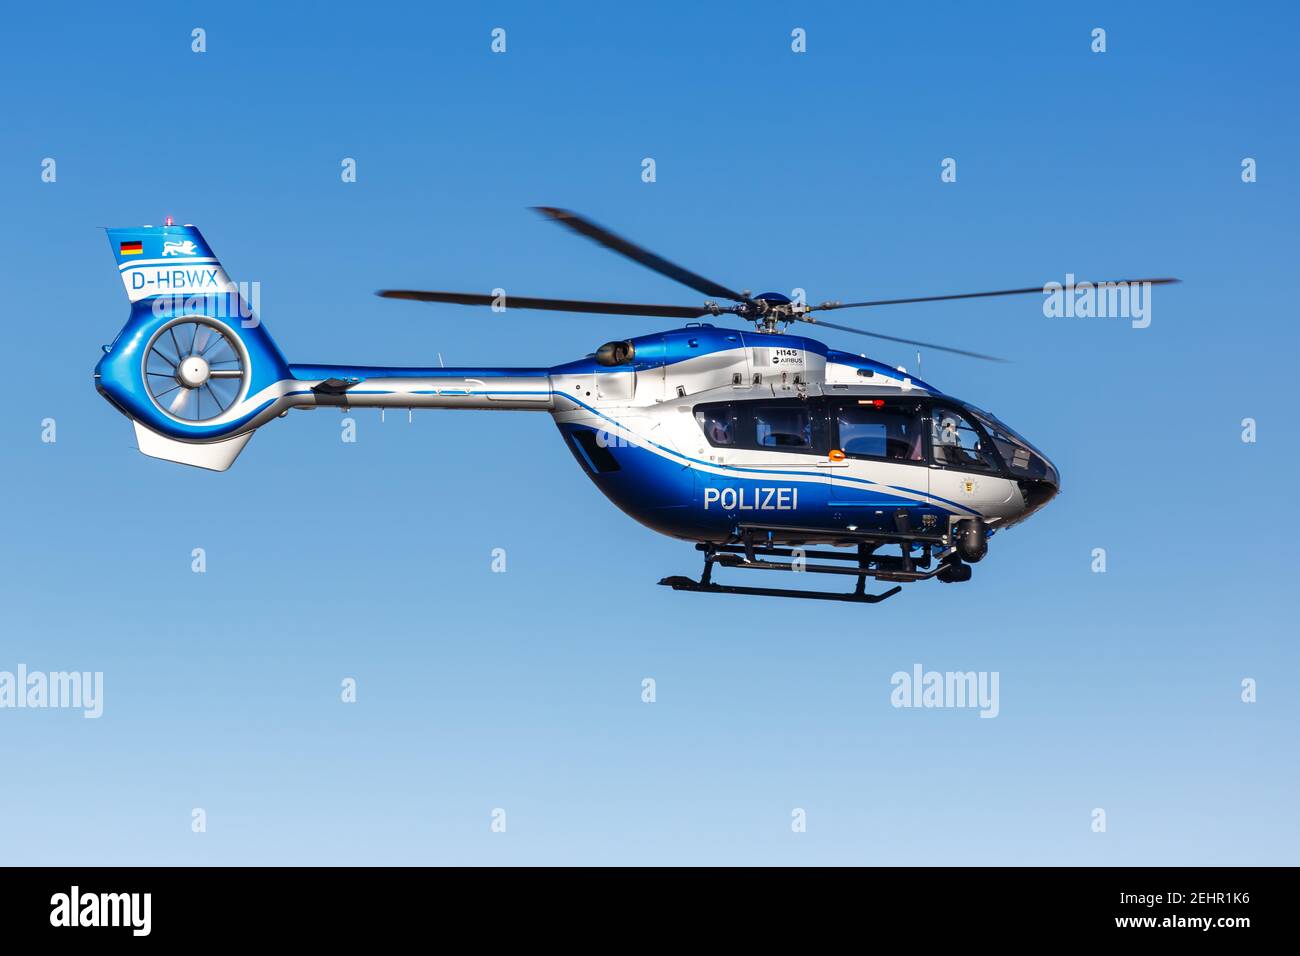 Stuttgart, 15. Januar 2021: Polizeihubschrauber Airbus Helicopters H145 am Flughafen Stuttgart (STR) in Deutschland. Stockfoto